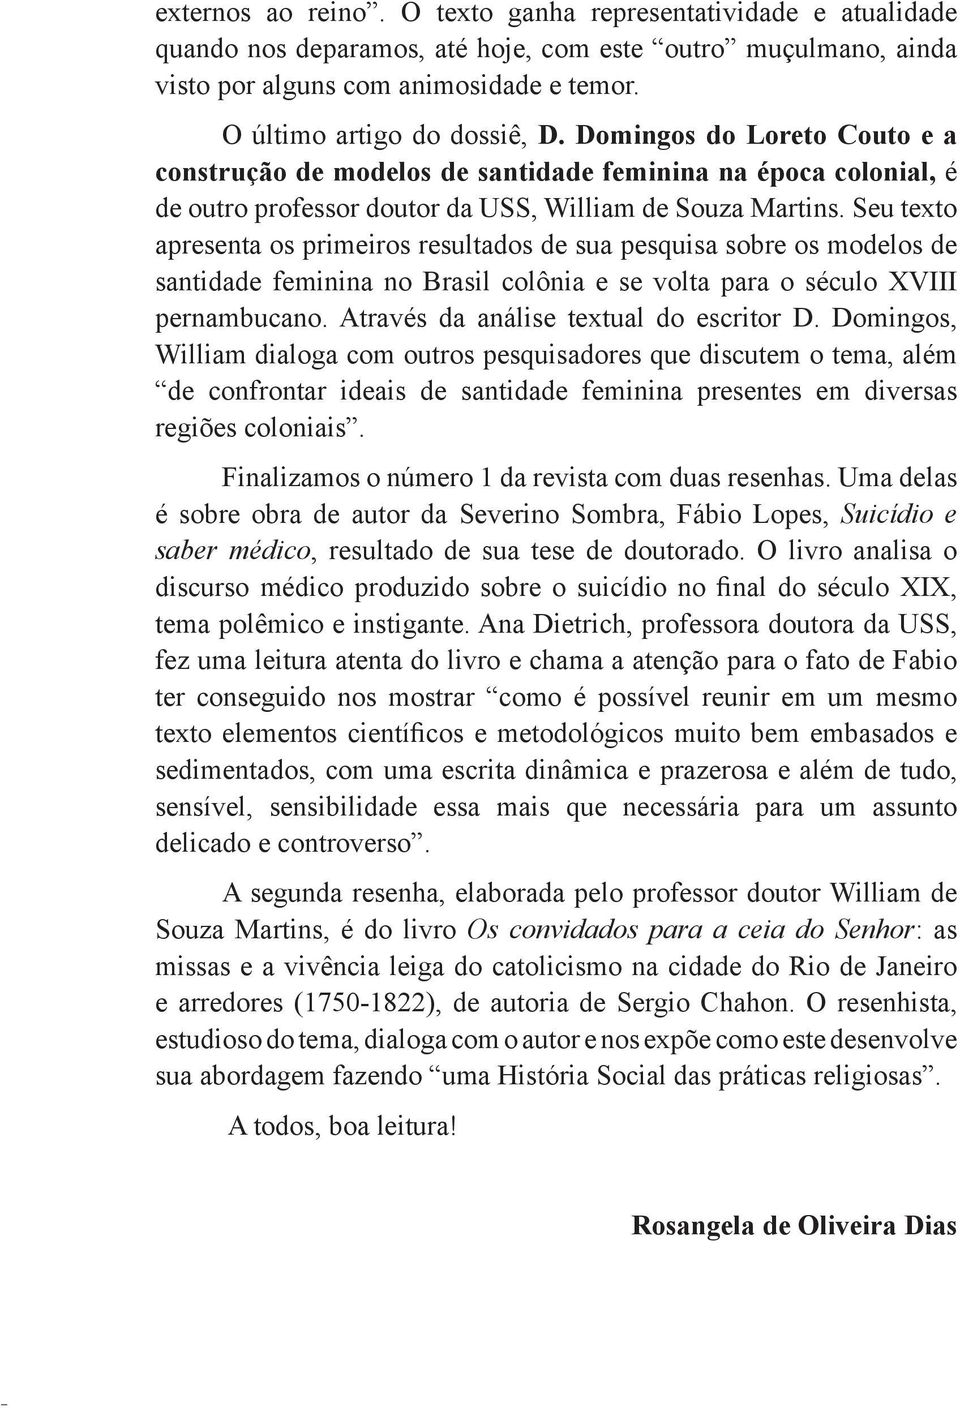 Seu texto apresenta os primeiros resultados de sua pesquisa sobre os modelos de santidade feminina no Brasil colônia e se volta para o século XVIII pernambucano.